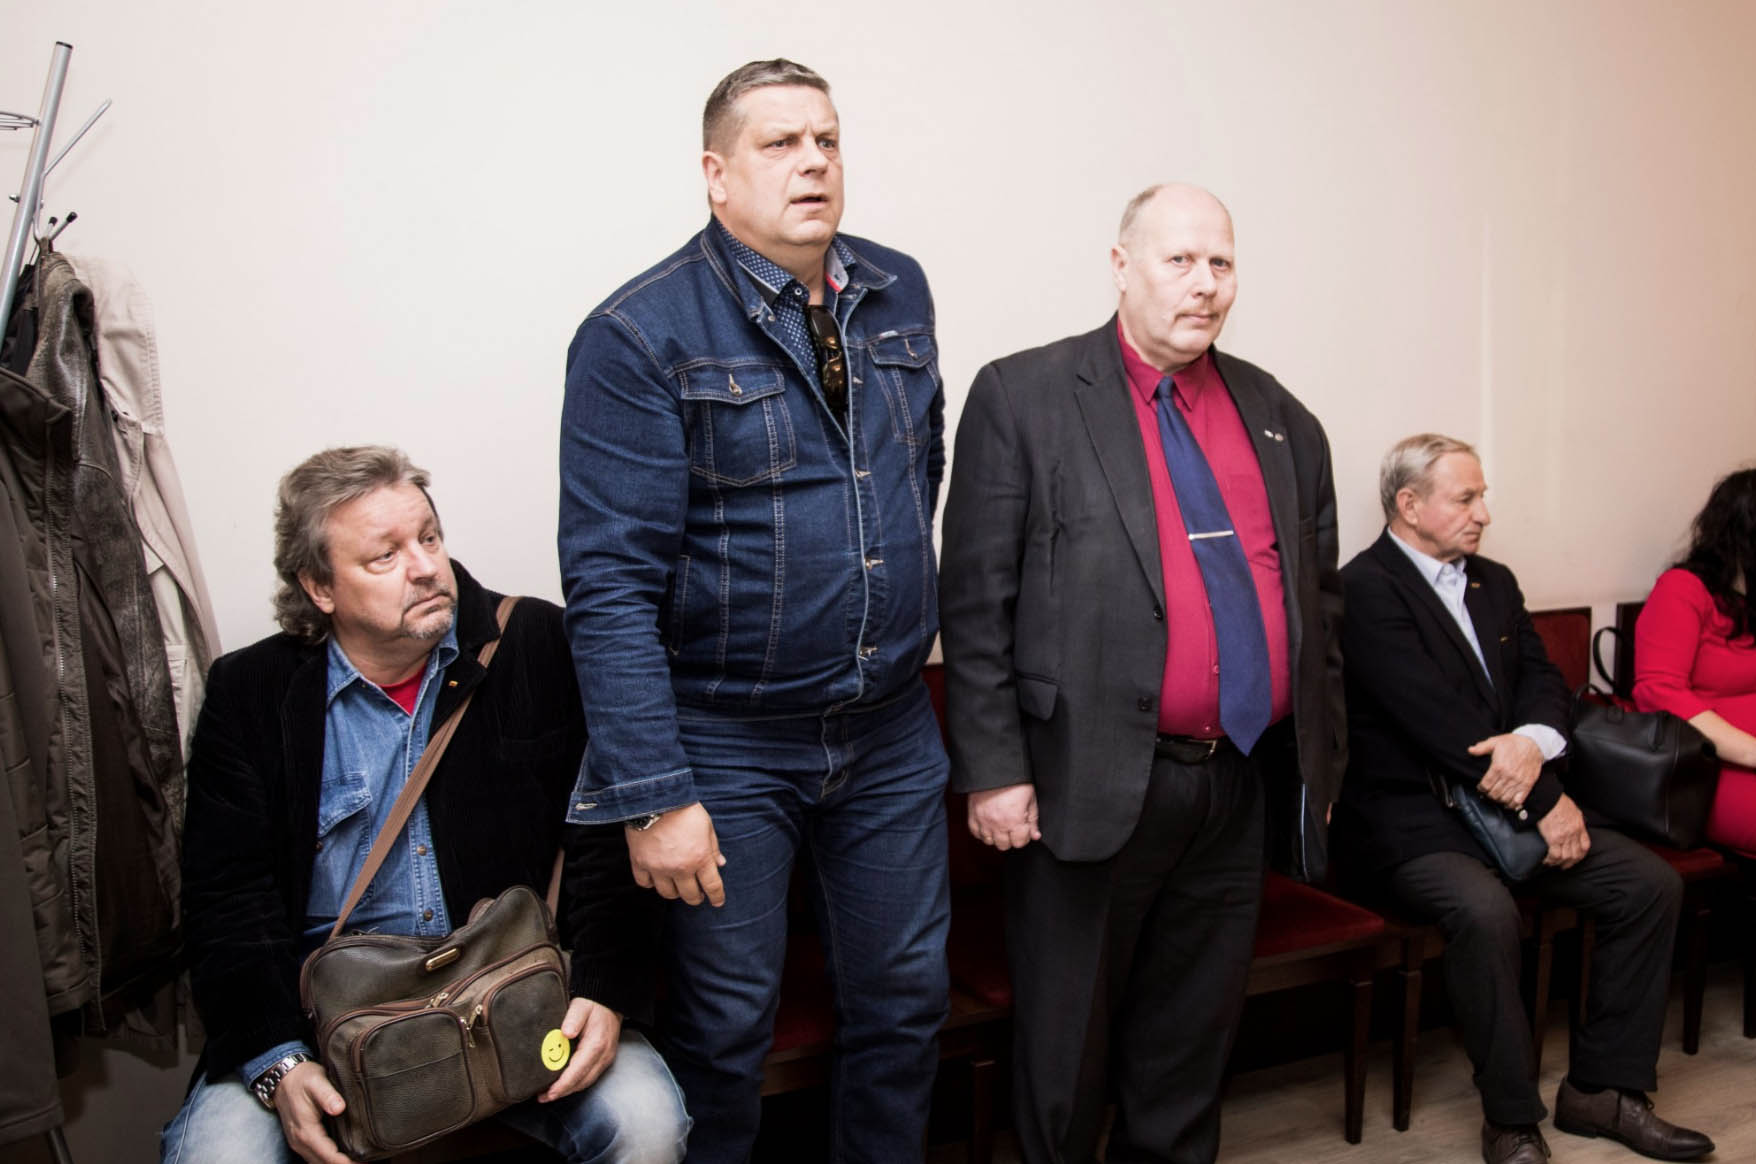 Vilniaus apygardos prokuratūra apeliacine tvarka apskundė Vilniaus apygardos teismo spalio 15-ąją priimtą išteisinamąjį nuosprendį baudžiamojoje byloje dėl sukčiavimo, piktnaudžiavimo, didelės vertės turto užvaldymo, dokumentų klastojimo ir kitų nusikalstamų veikų organizuojant 2011 metų Europos krepšinio čempionatą Panevėžyje.